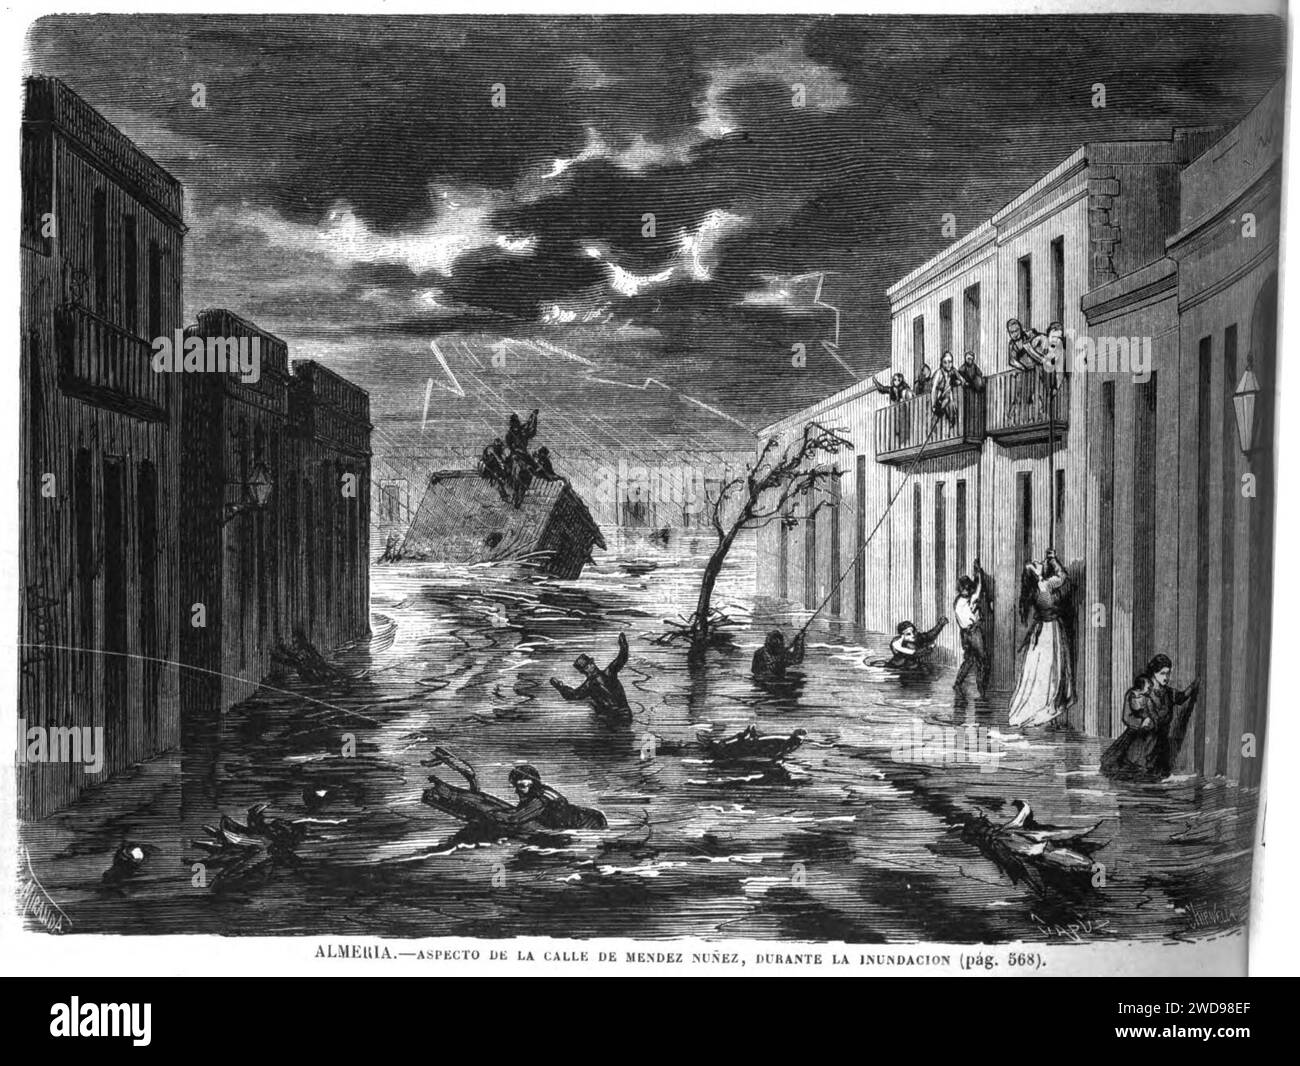 1871-11-25, La Ilustración Española y Americana, Almería, Aspecto de la calle de Méndez Núñez durante la inundación. Stock Photo